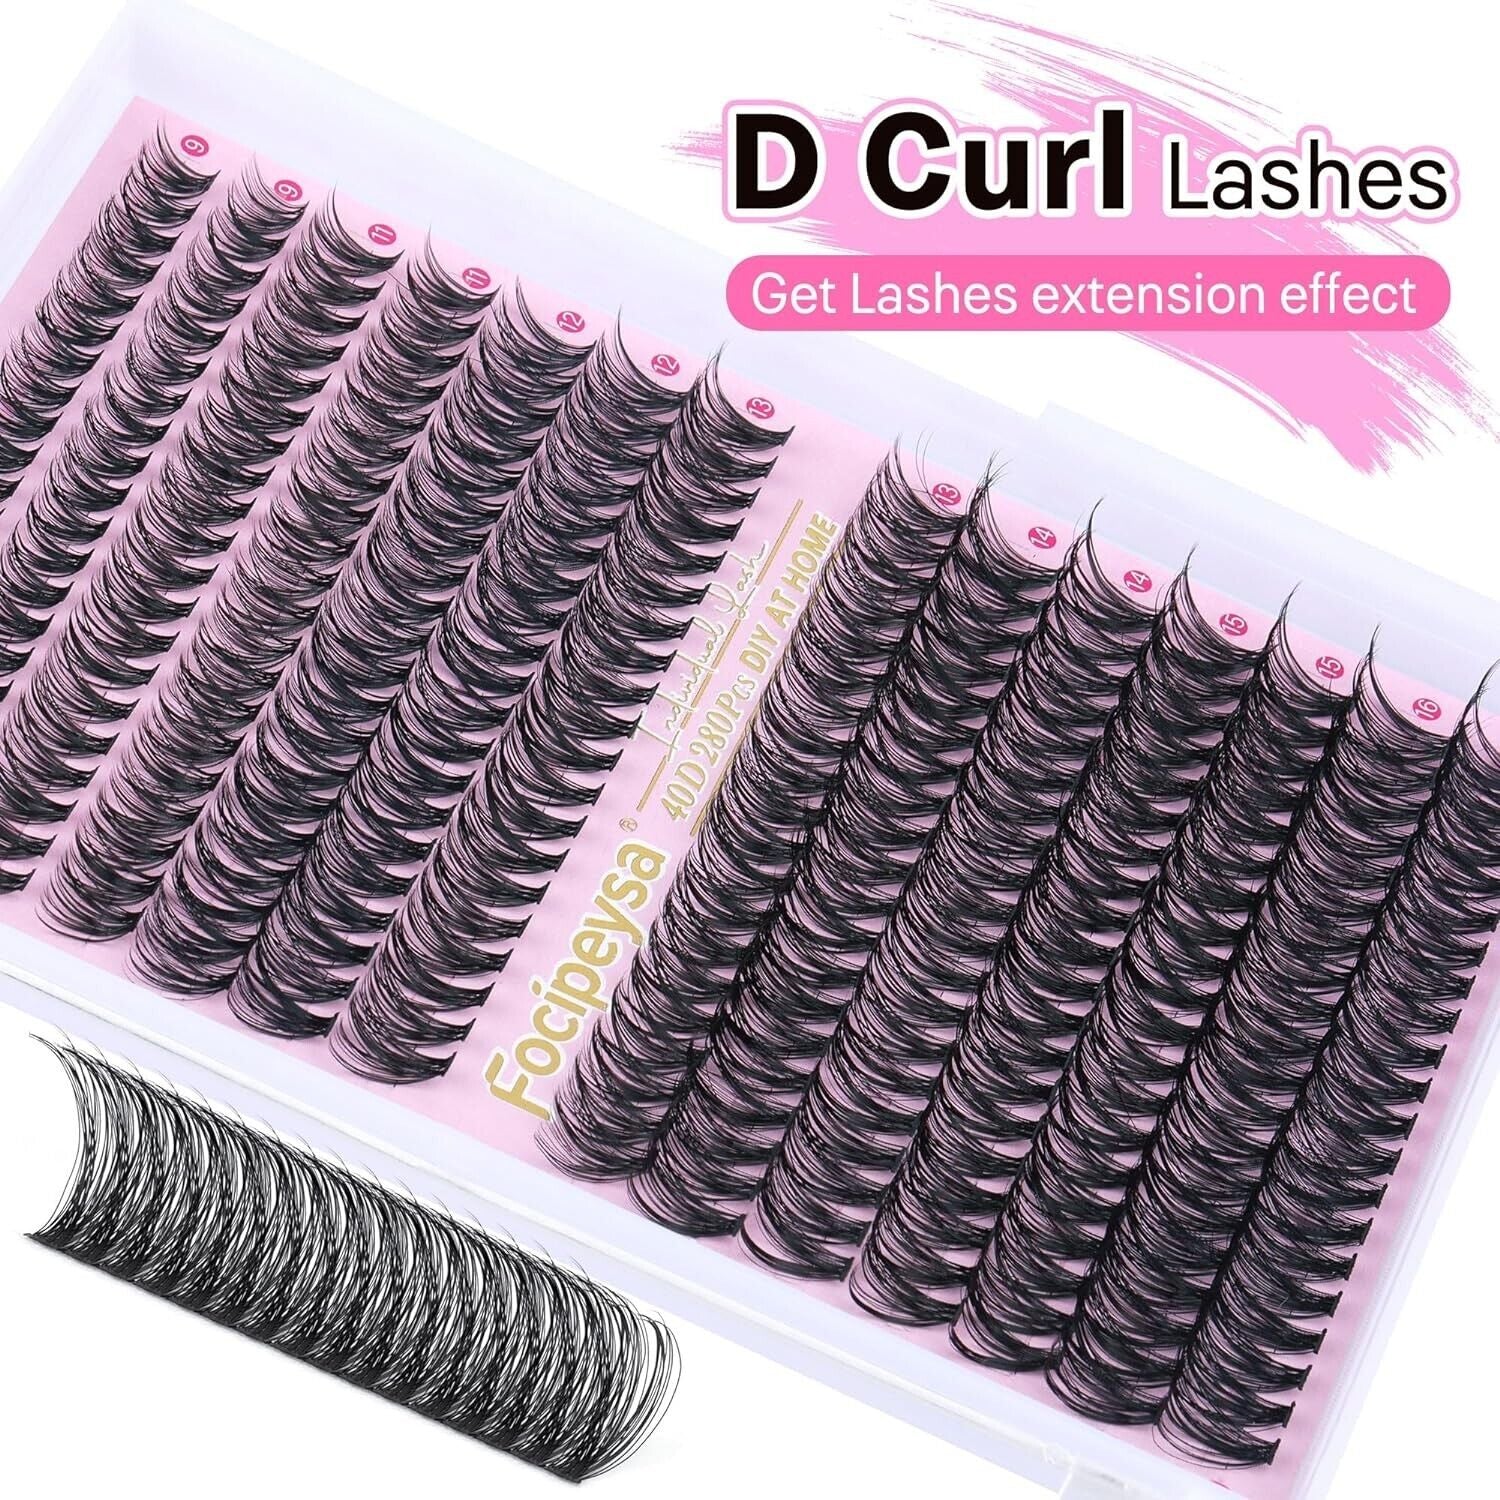 Eyelash Extension Kit D Curl Lash Clusters 280Pcs DIY Lash Extension Kit 40D